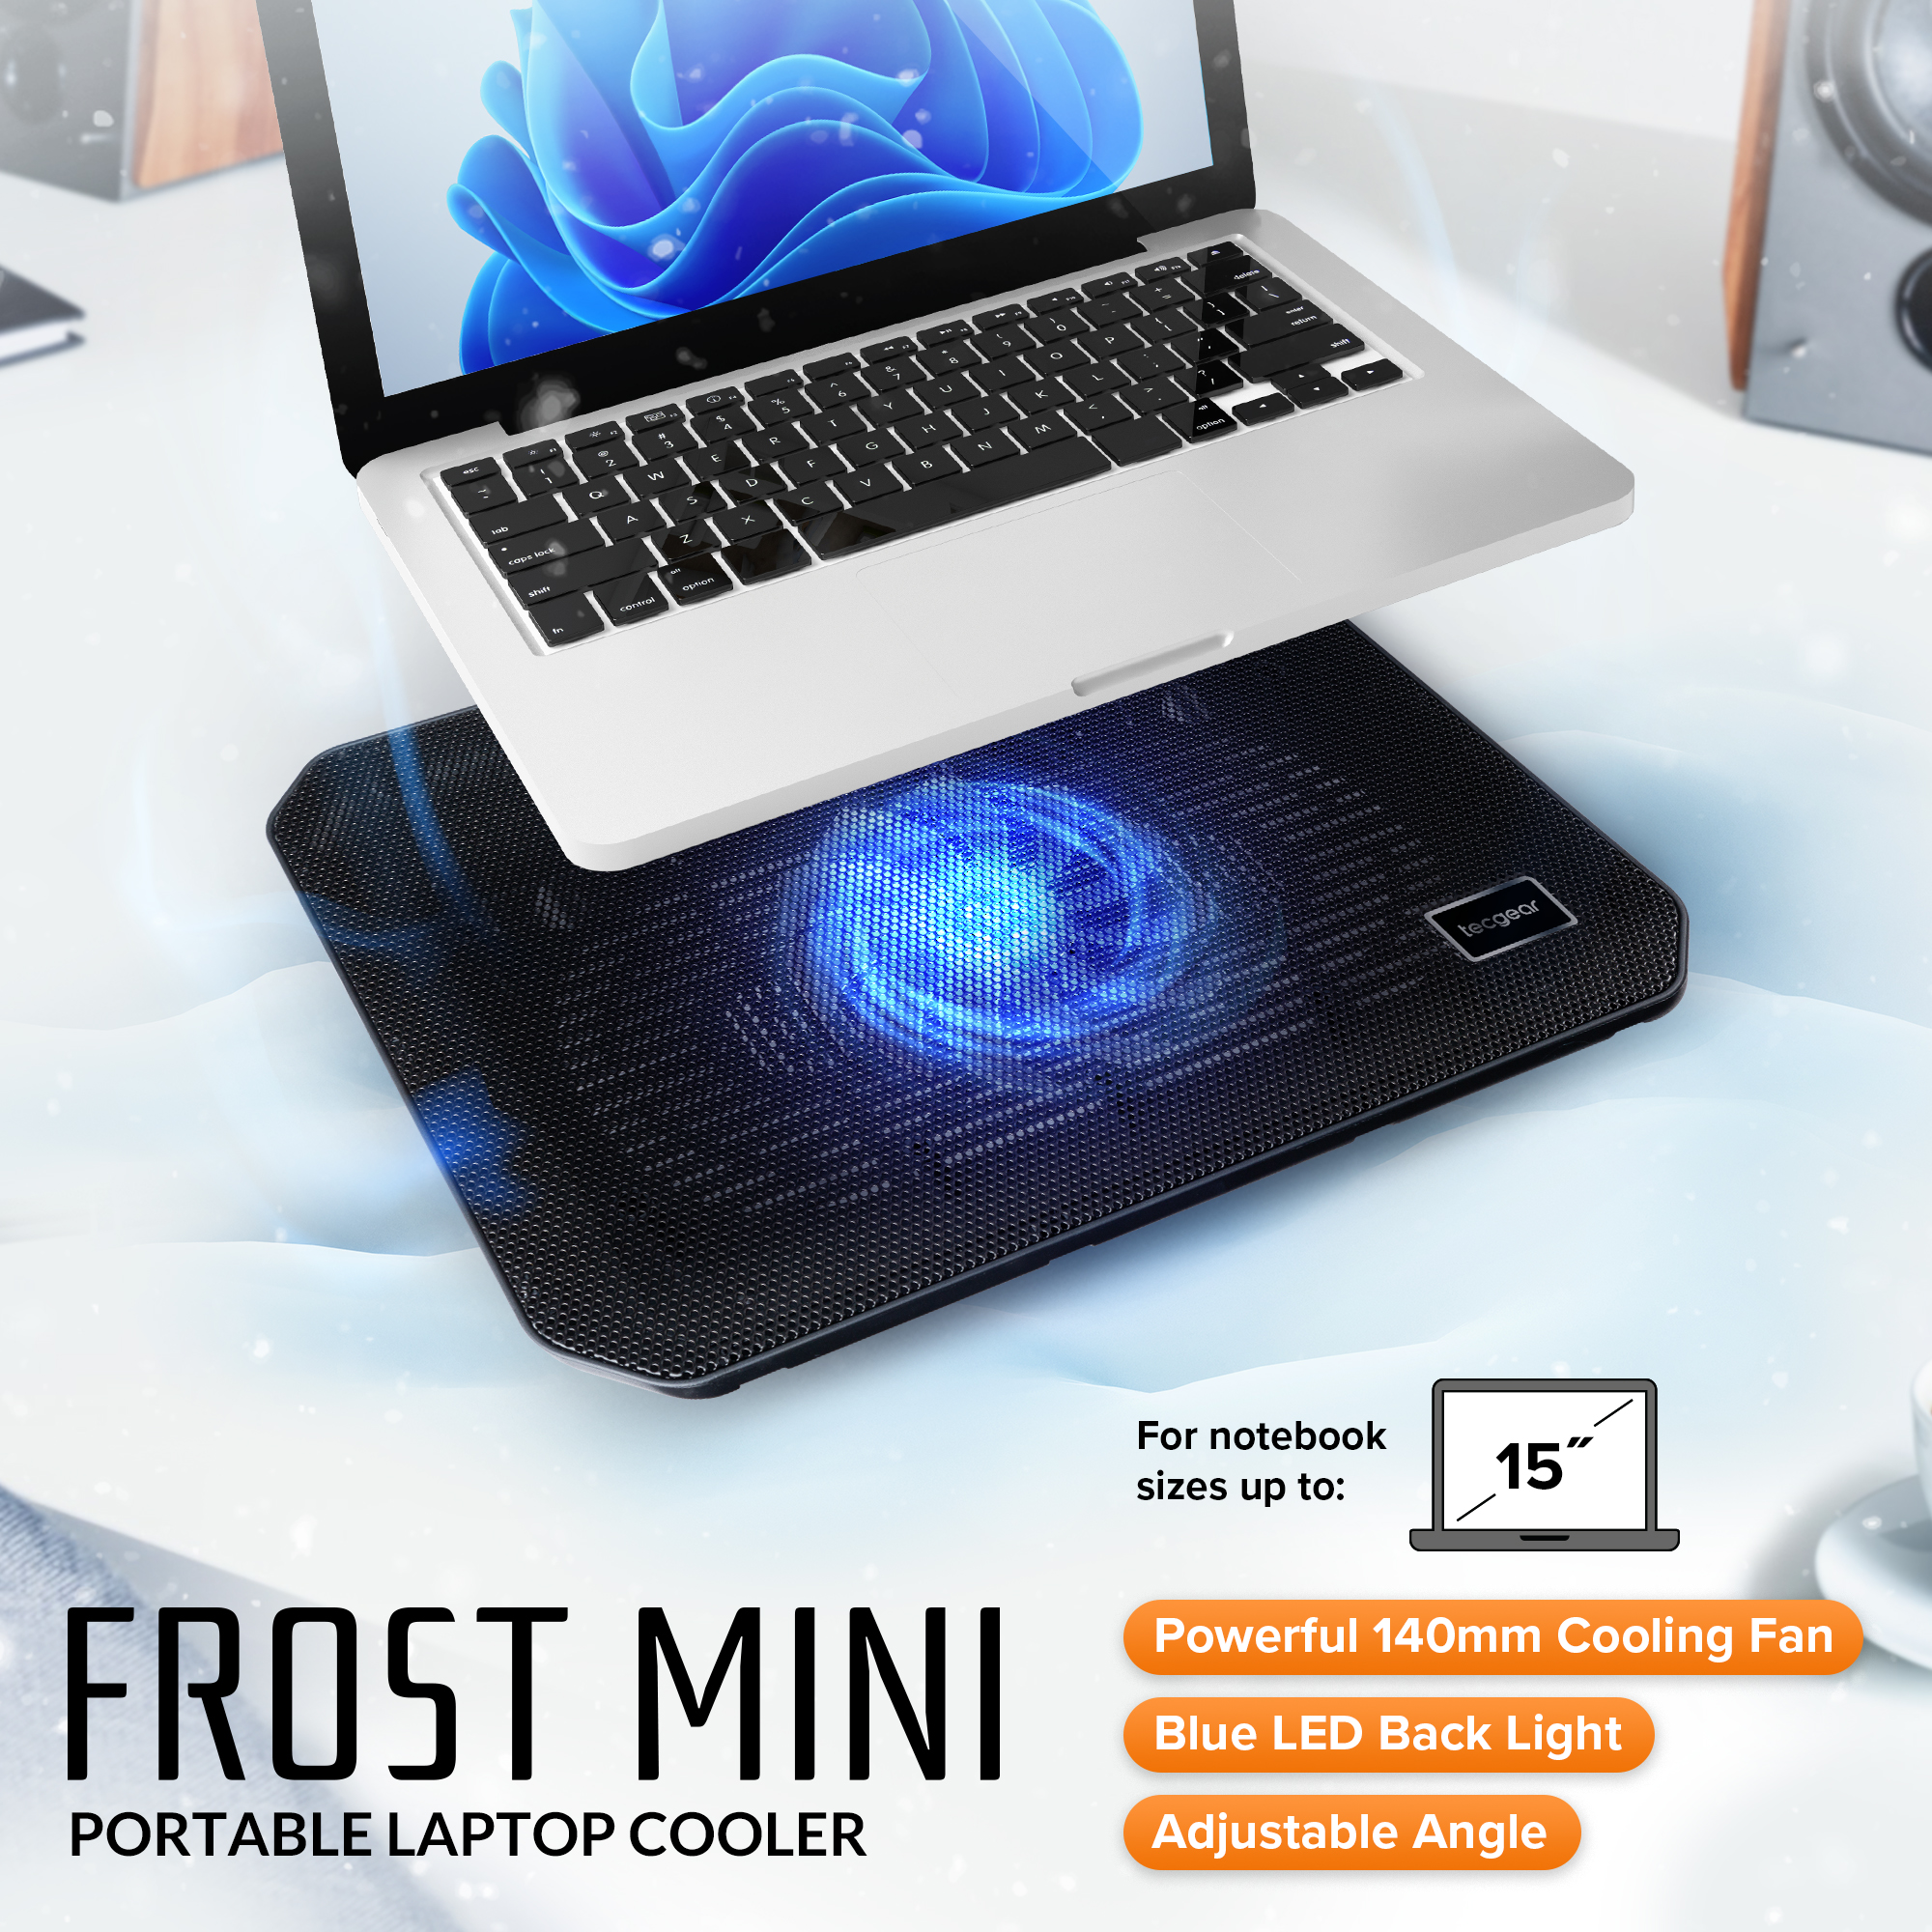 Frost Mini Portable Laptop Cooler